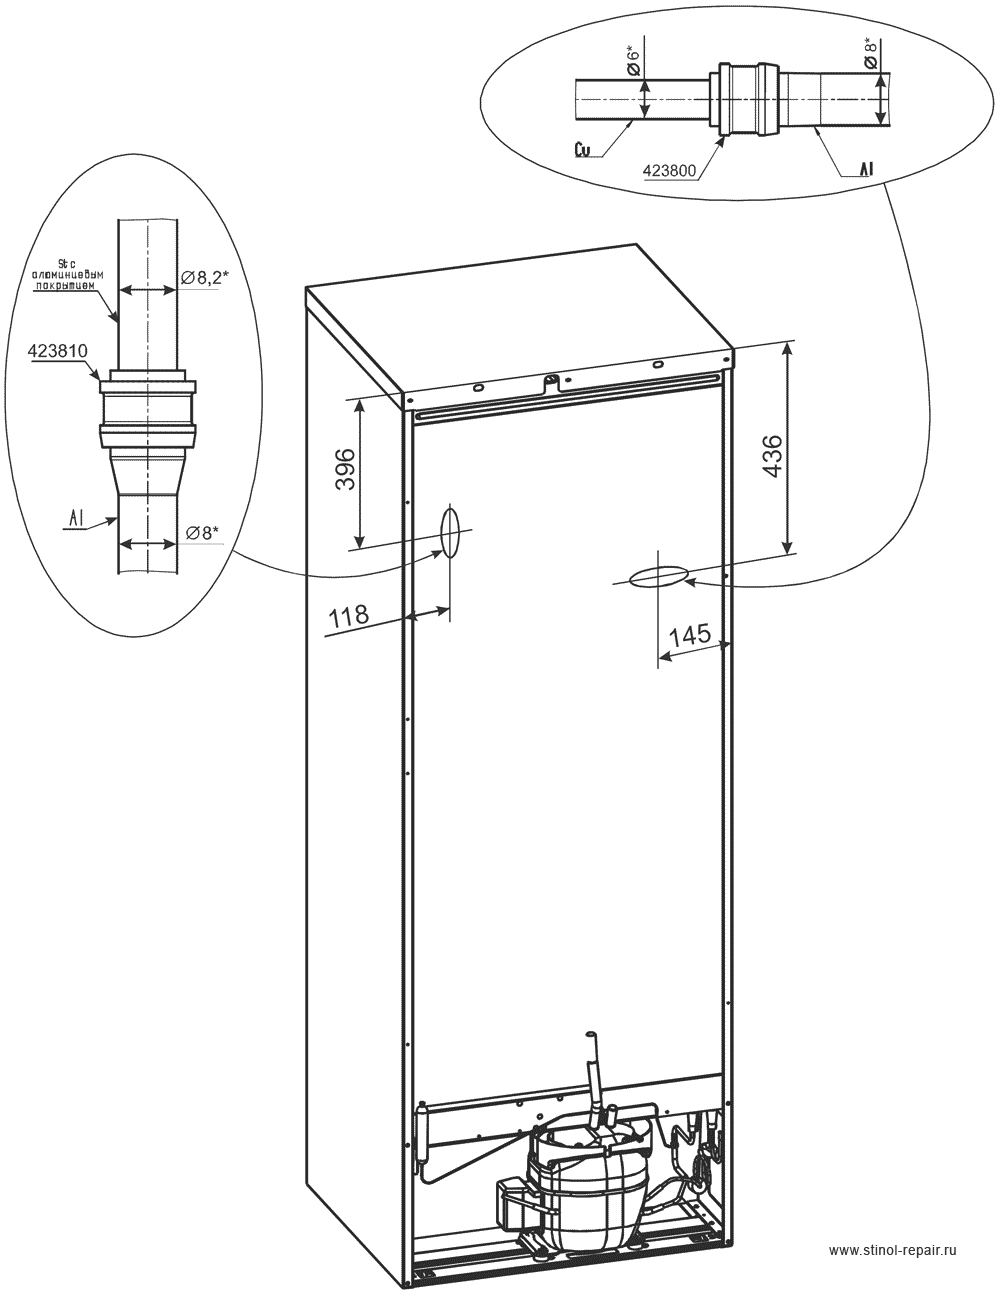 Расположение локринговых соединений холодильника Стинол-242Q - первоначальный вариант.